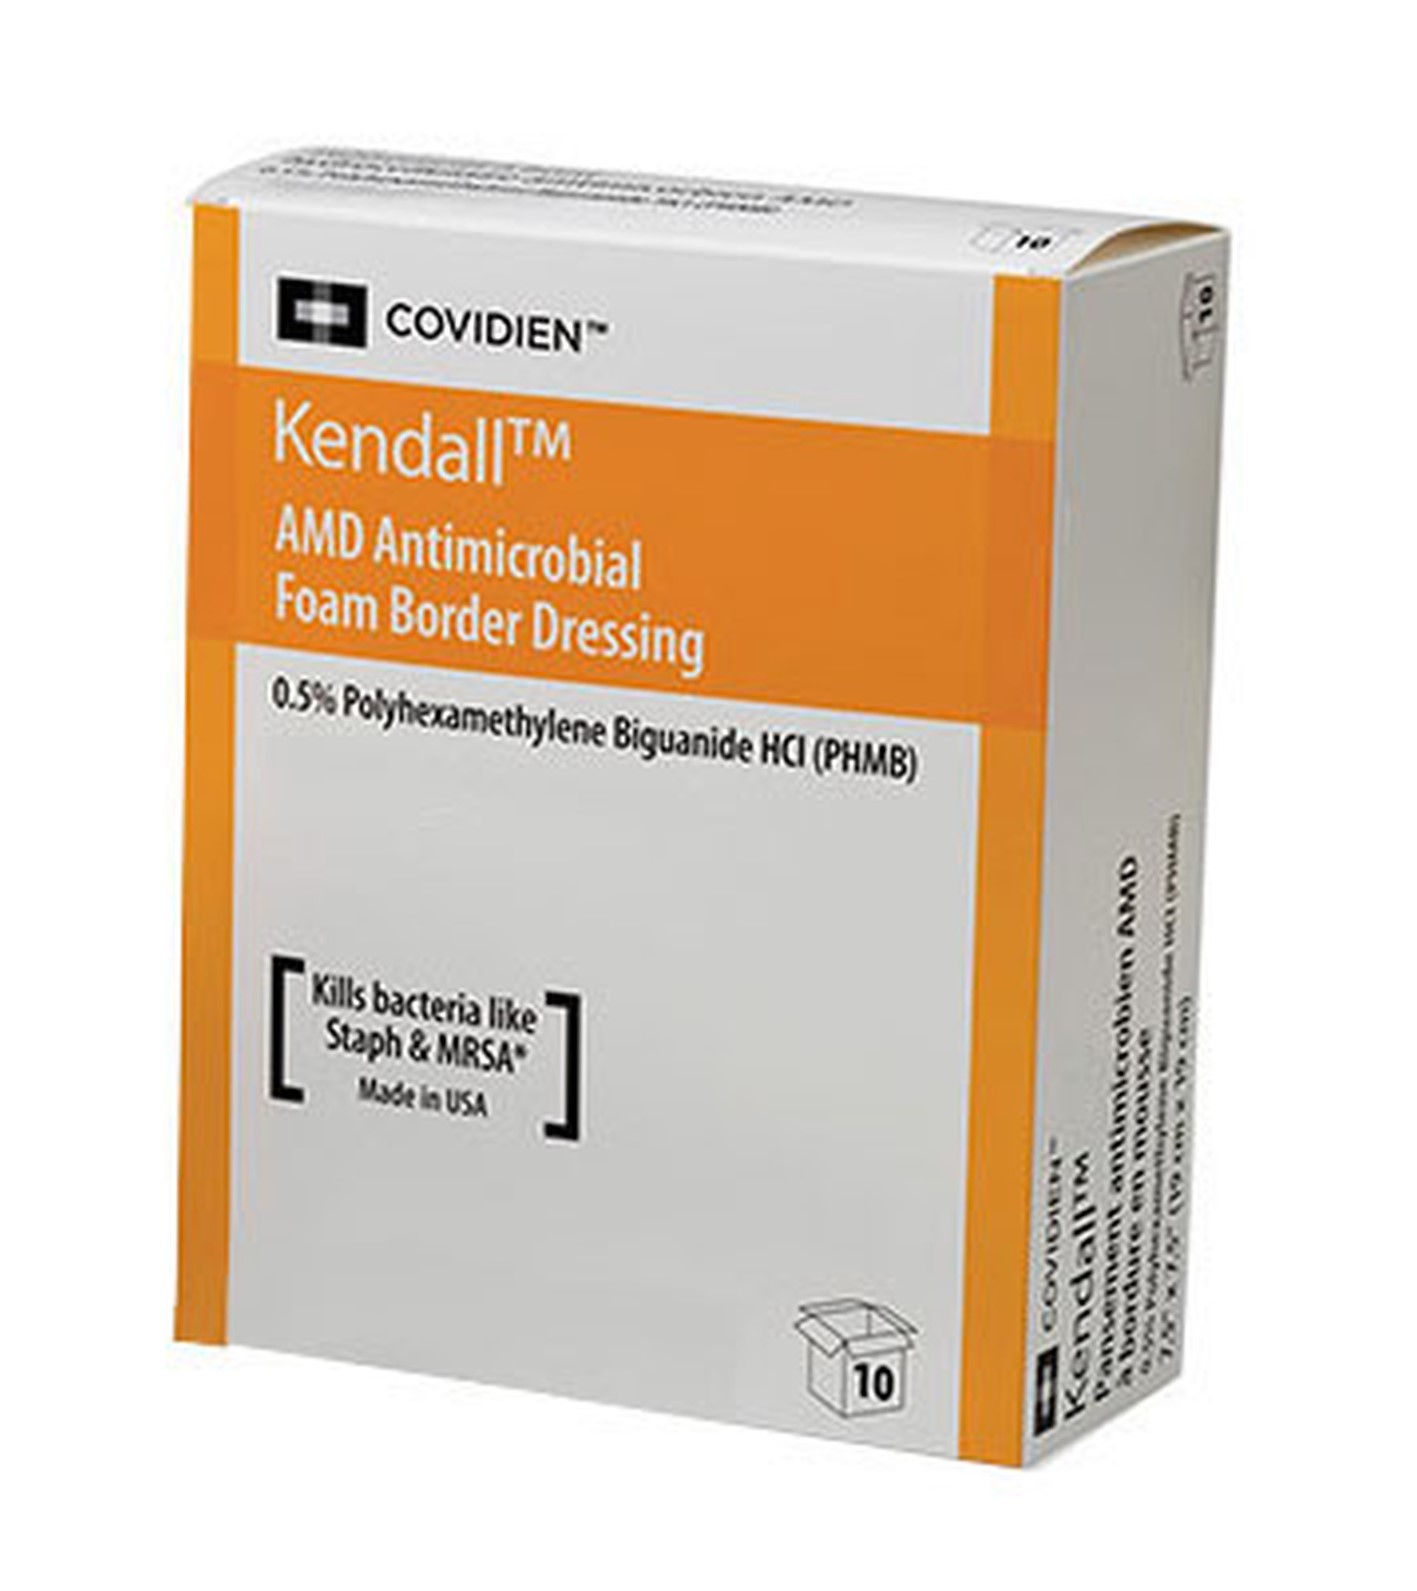 Kendall AMD Antimicrobial Foam Border